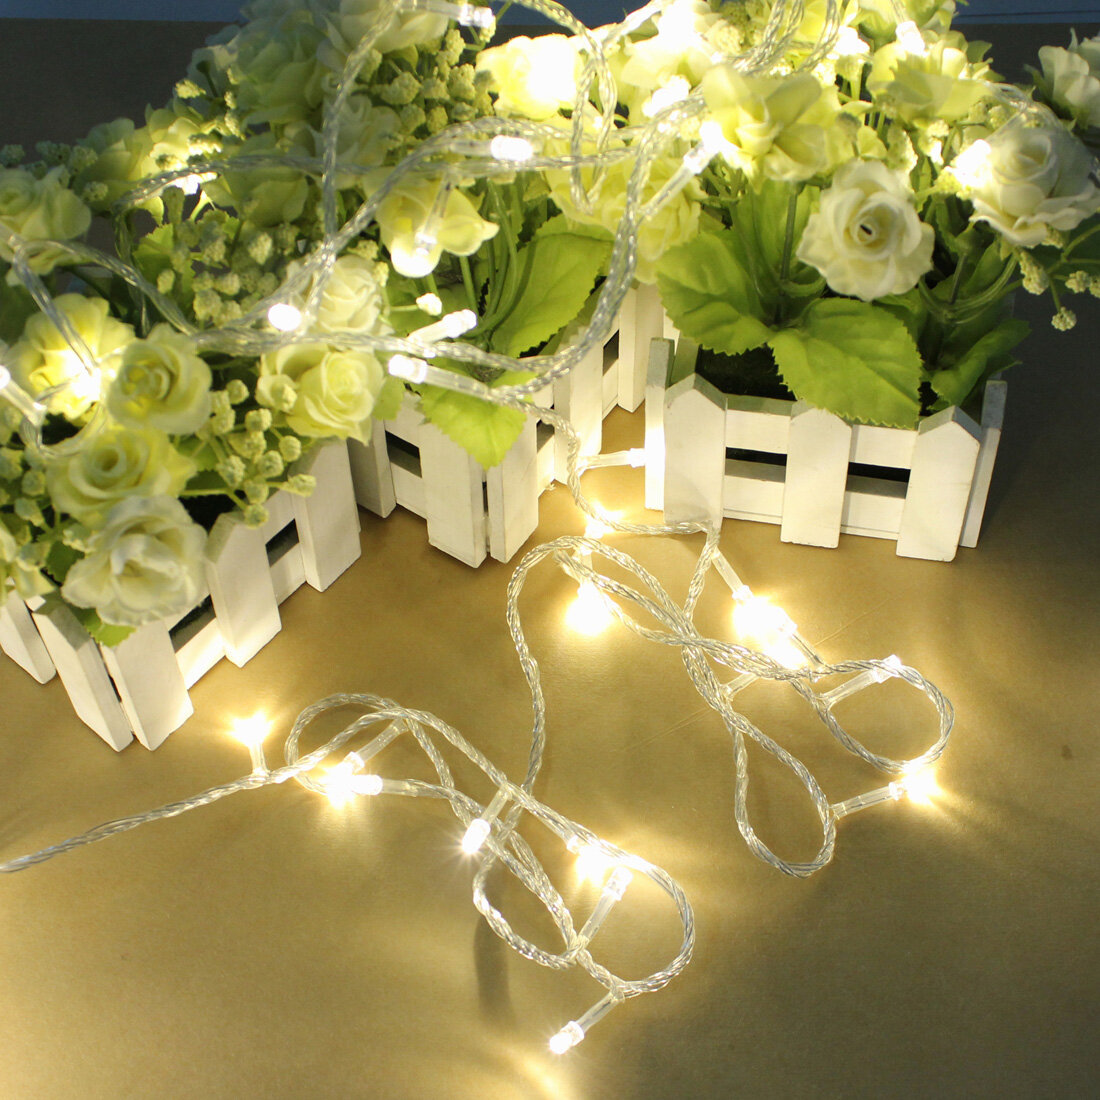 100 LED 10m Warm White String Decoration Light for Christmas Decorations Clearance Christmas Lights